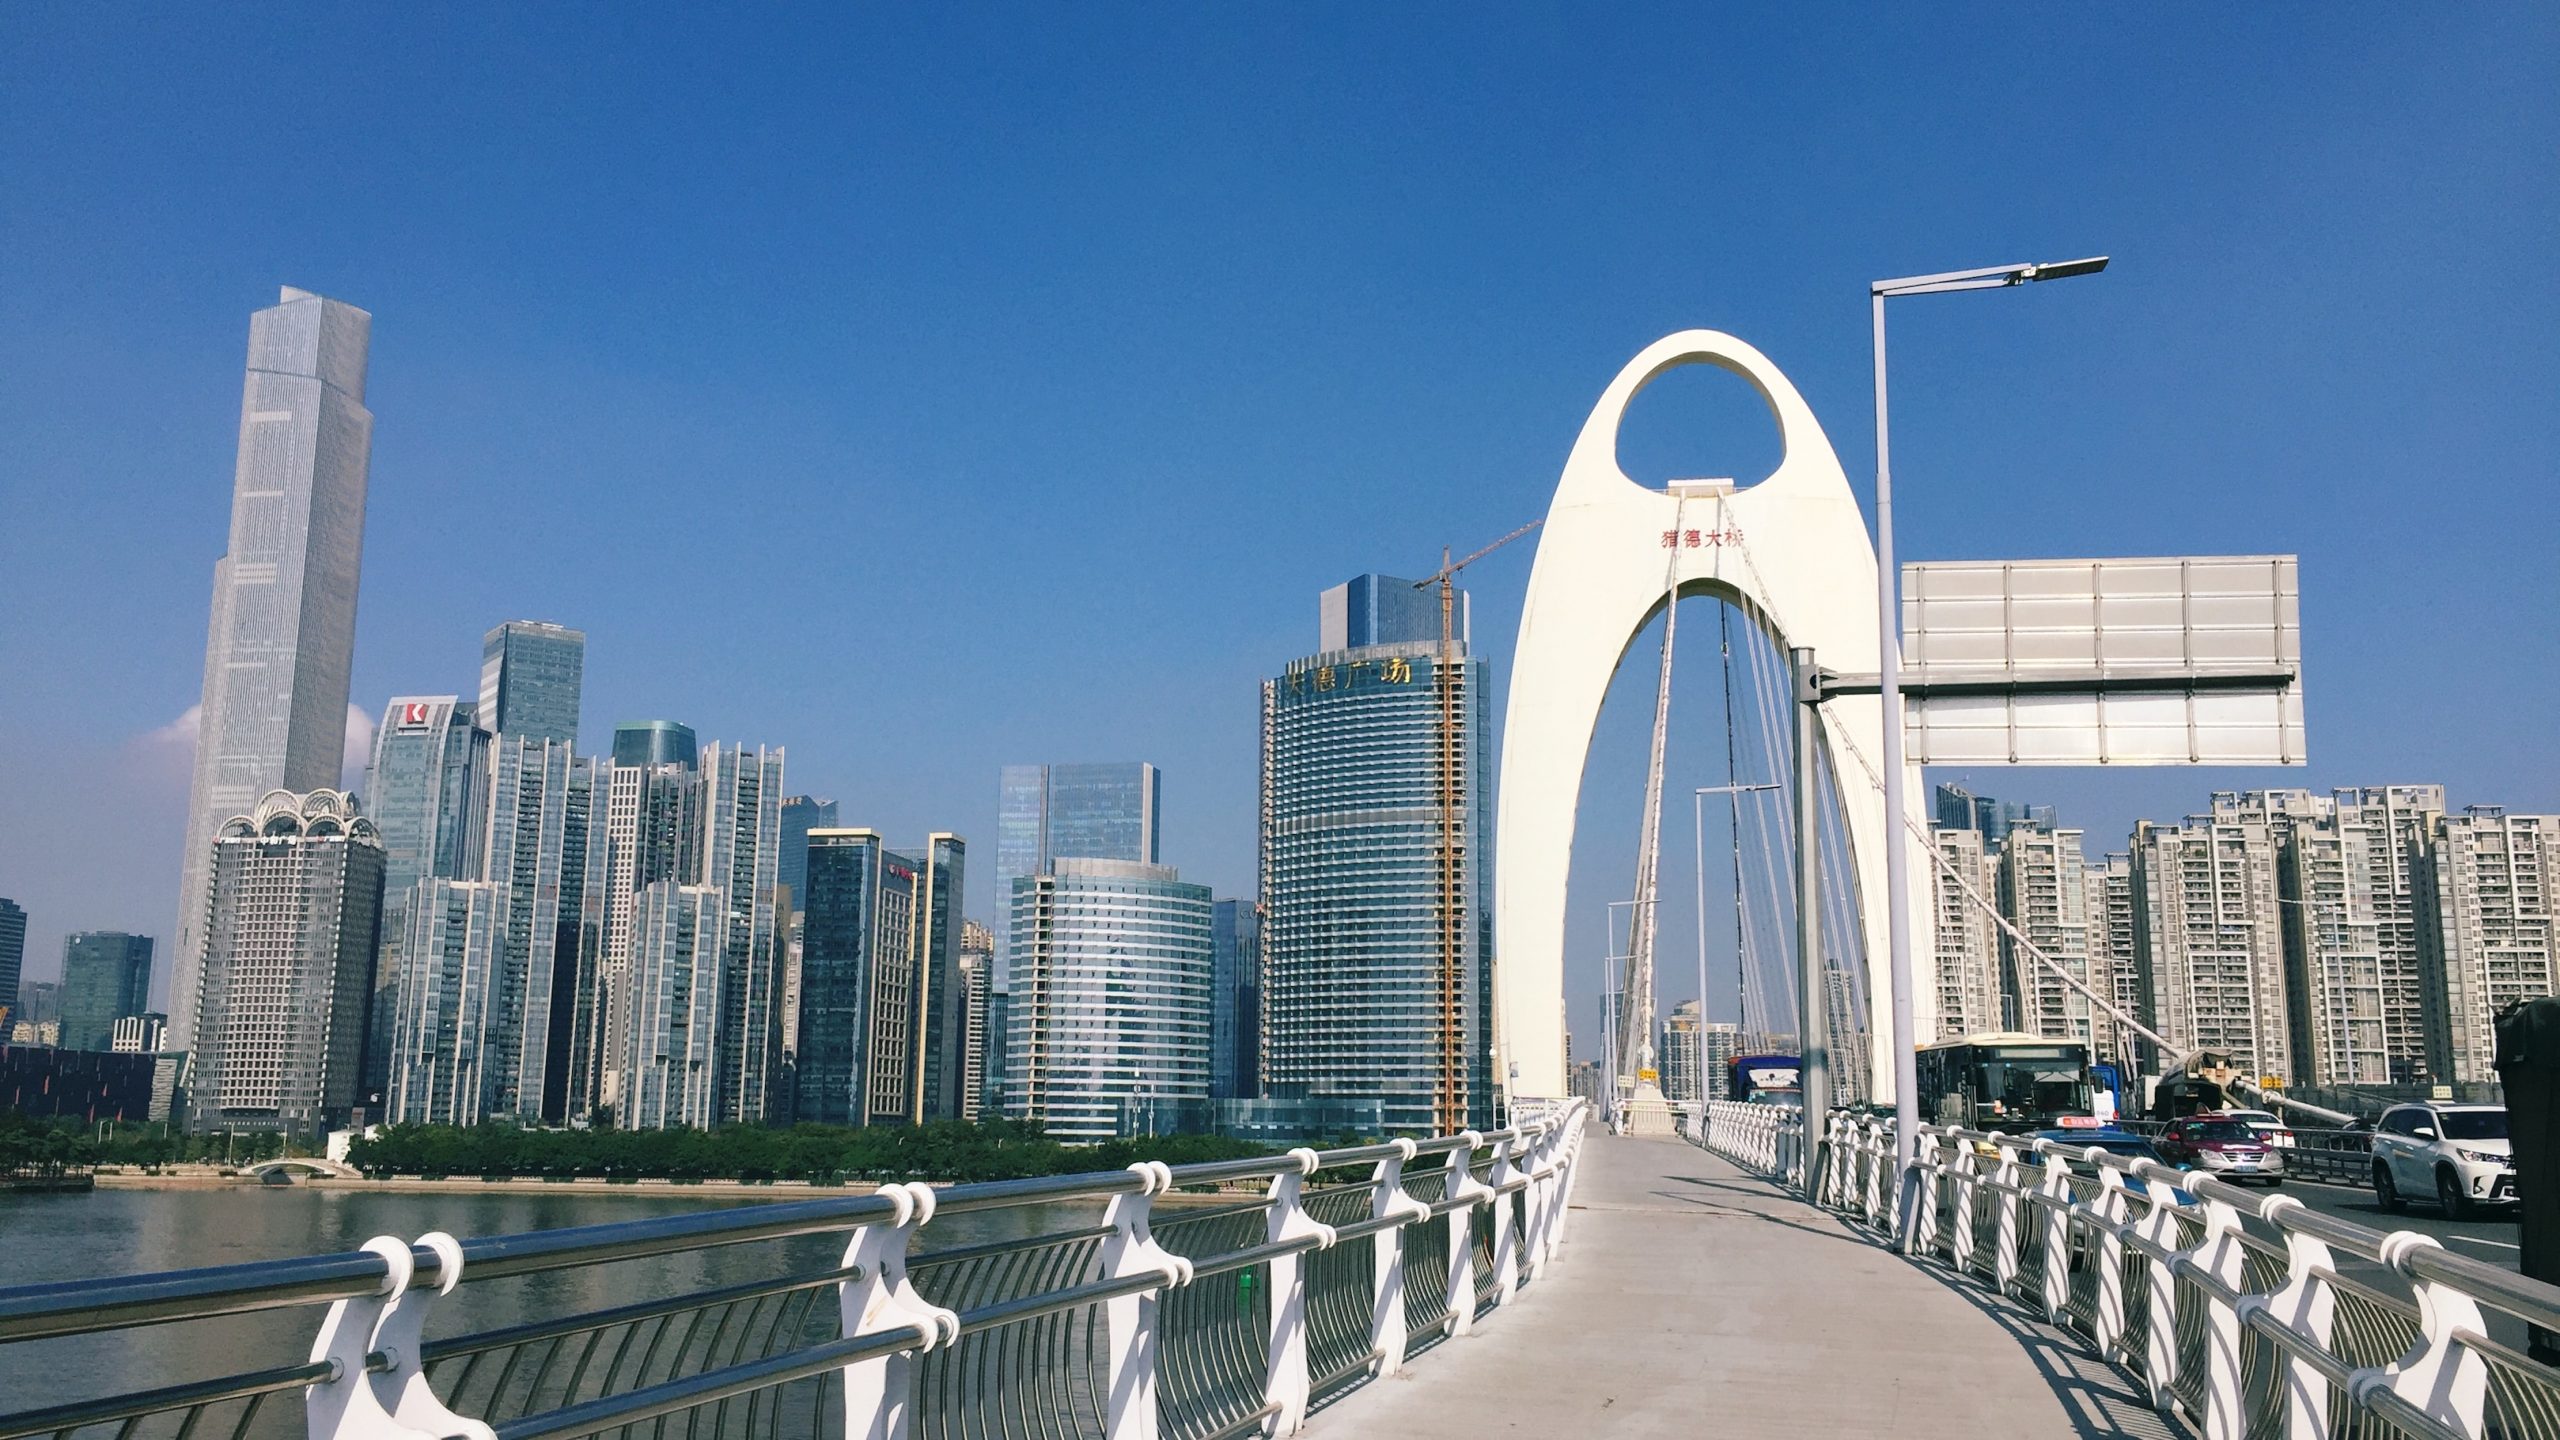 Liede Bridge, Guangzhou